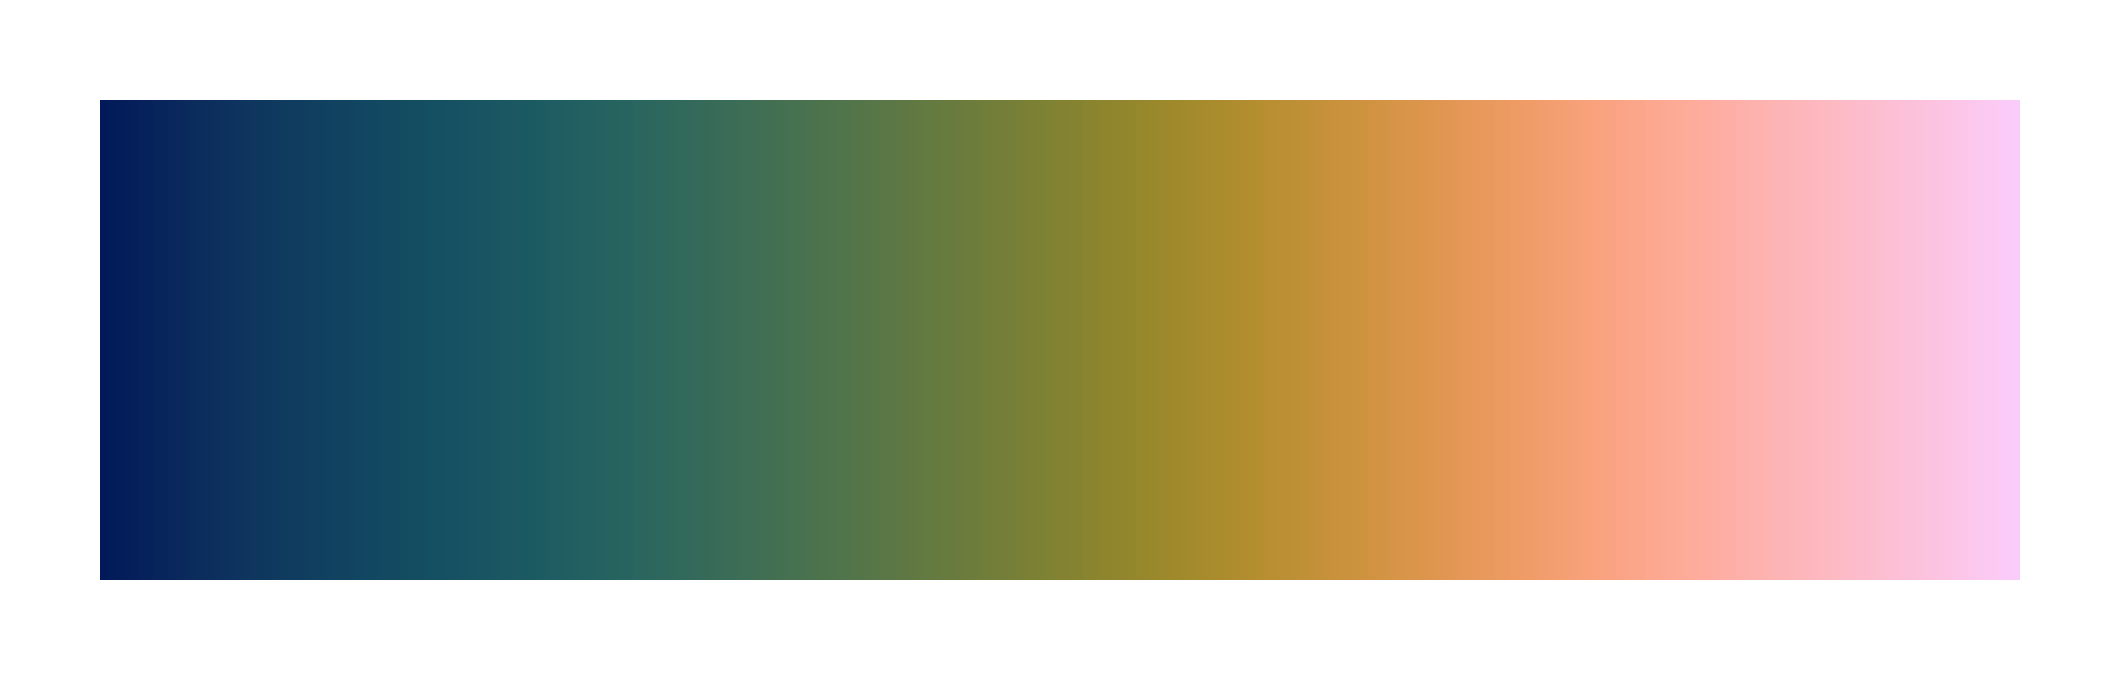 Batlow scientific colour palette for data visualisation